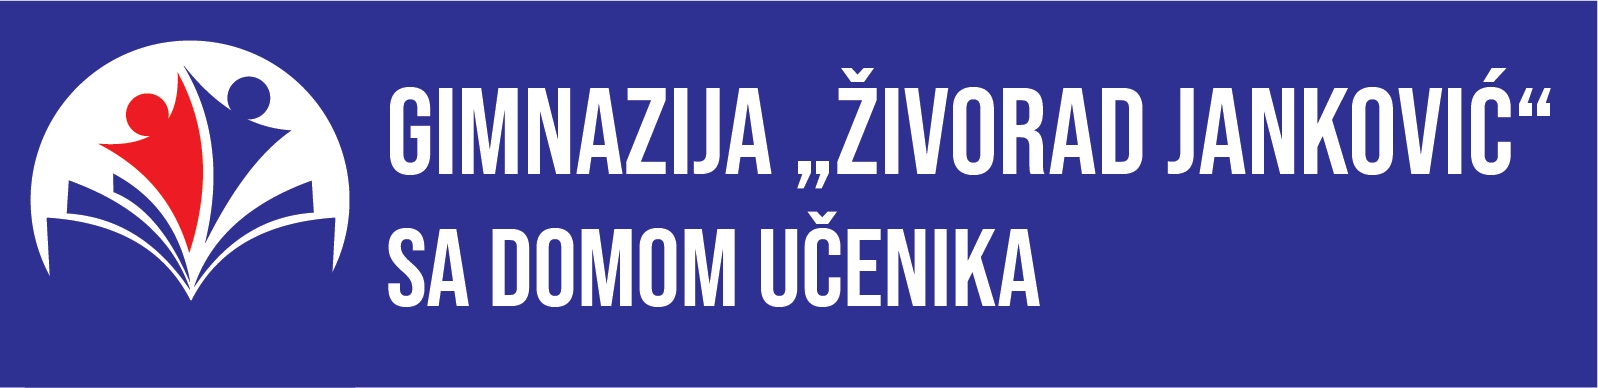 Gimnazija "Živorad Janković"